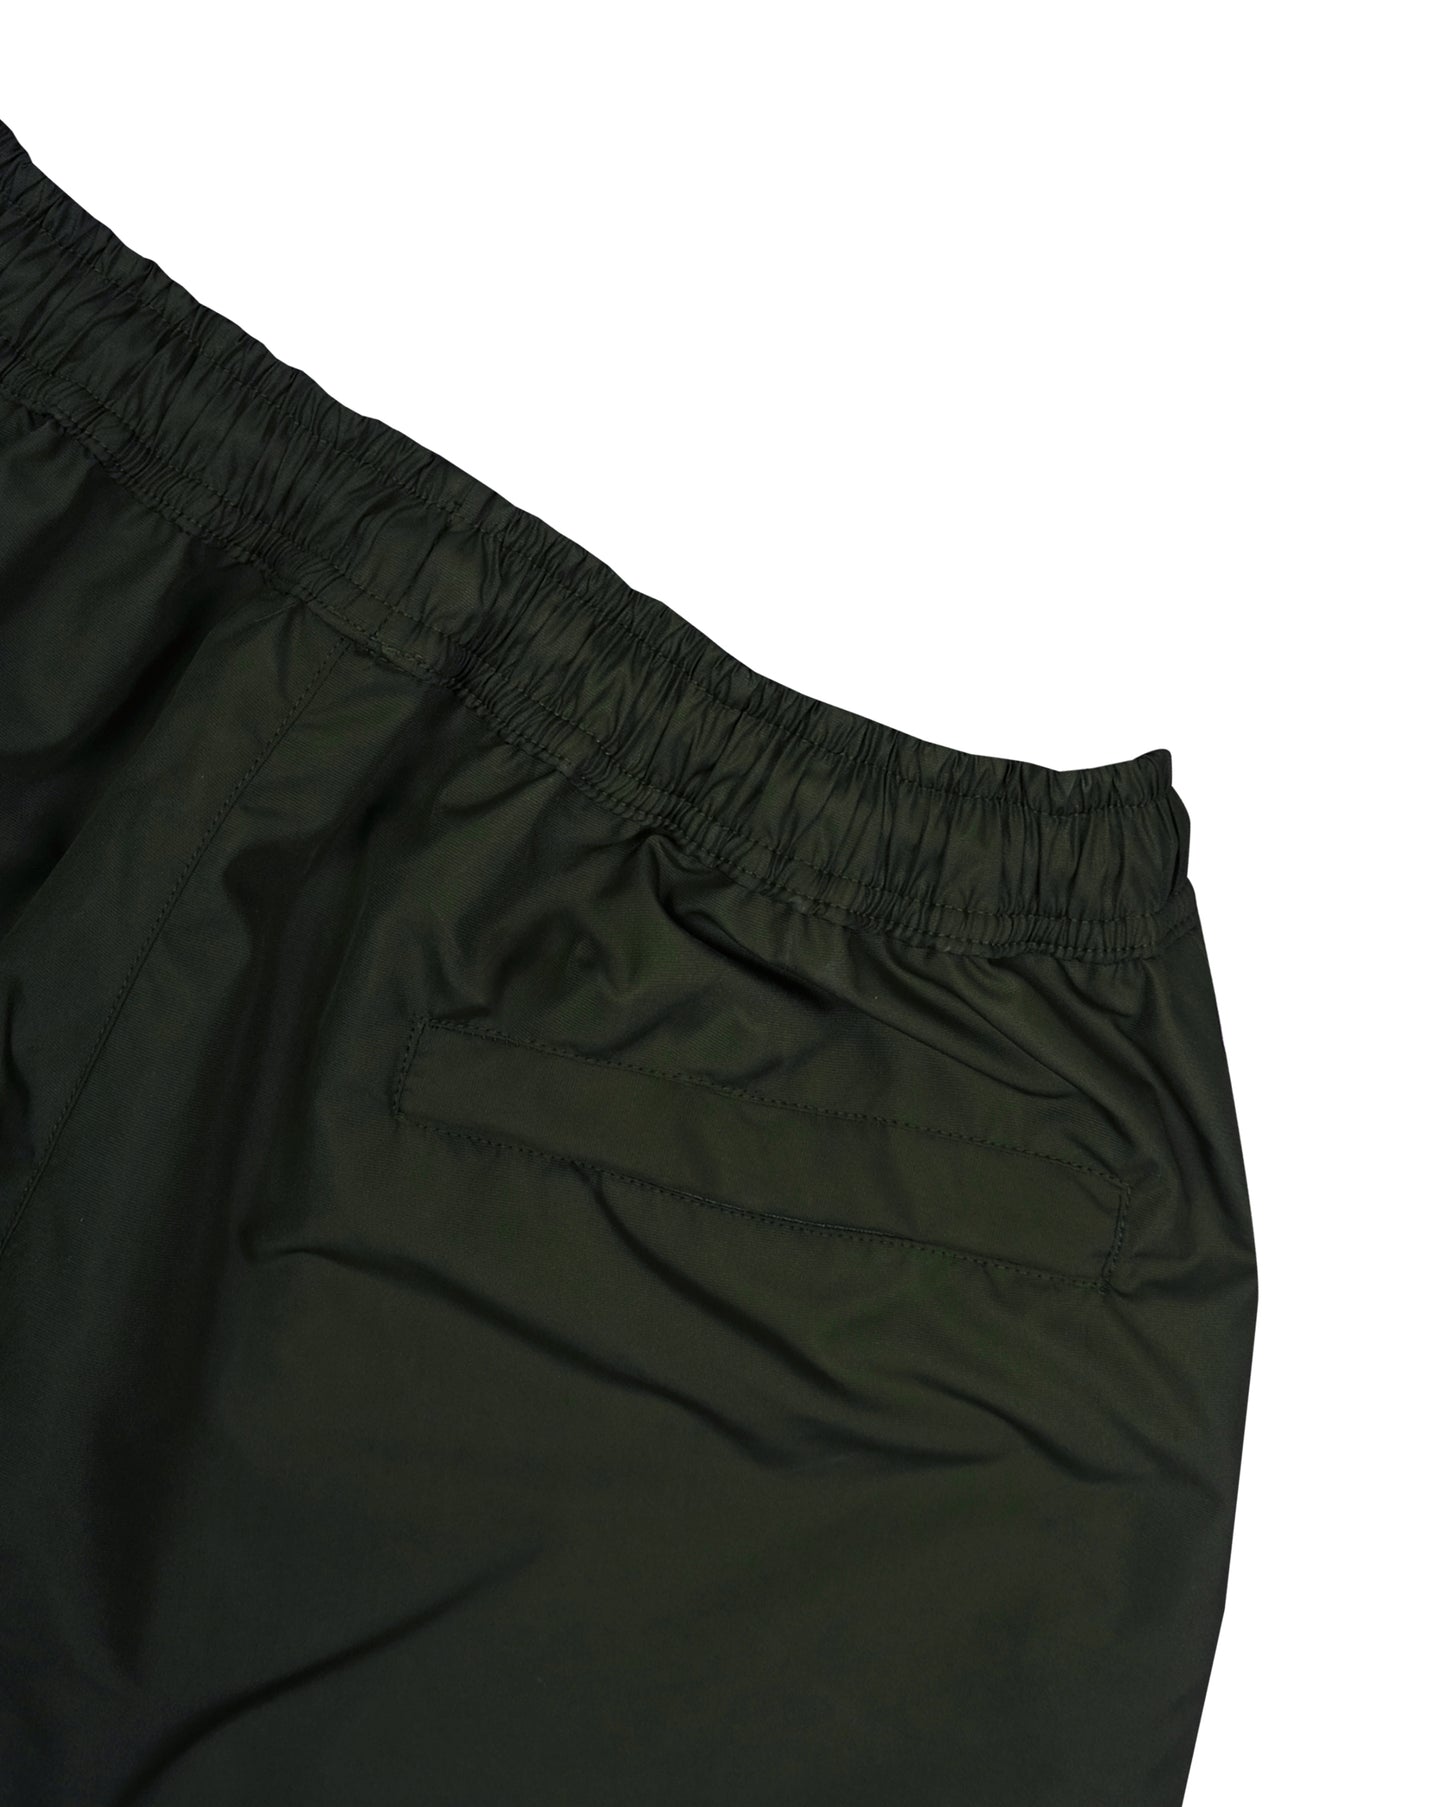 Lax Green Board Shorts